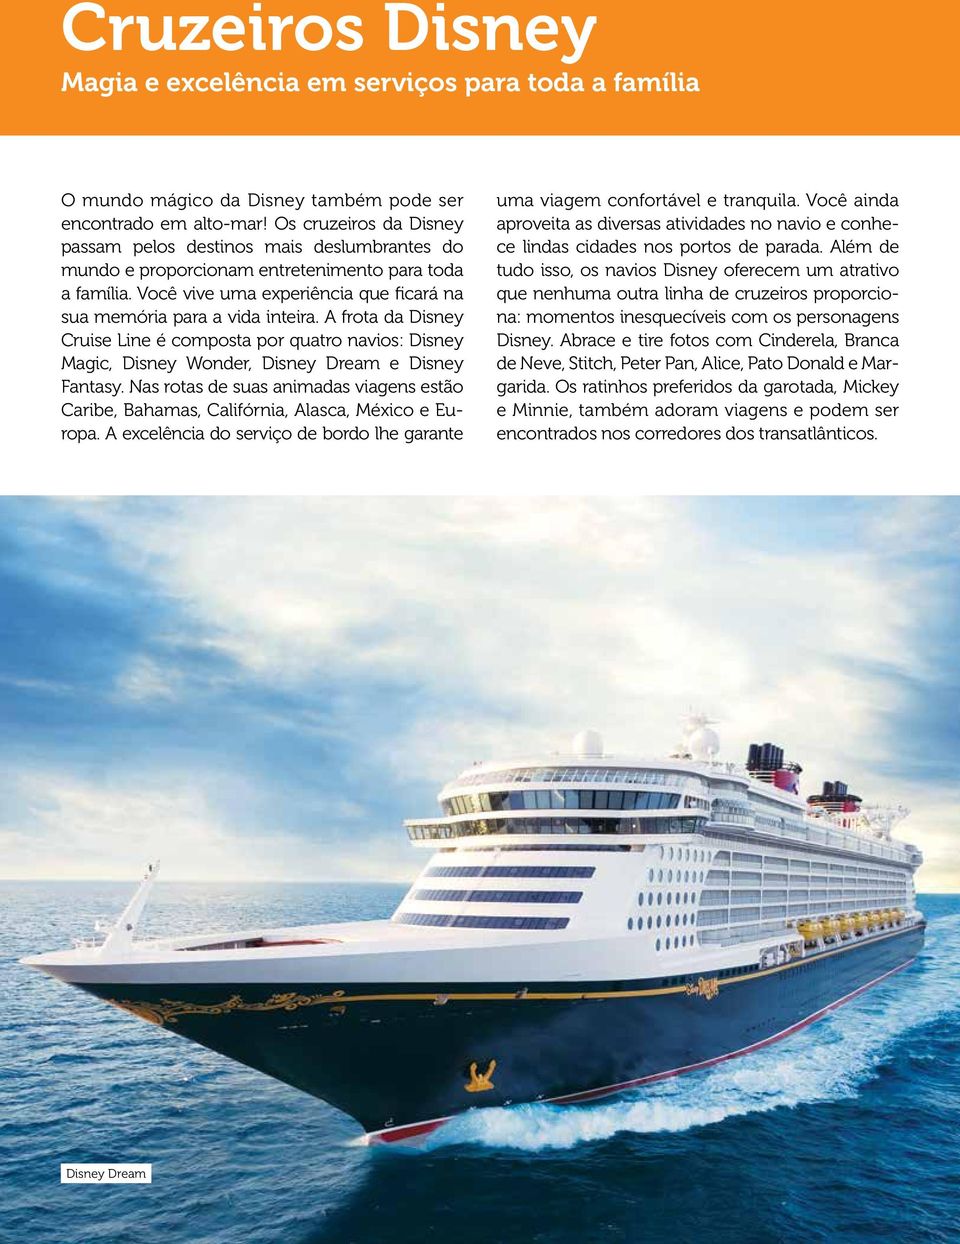 A frota da Disney Cruise Line é composta por quatro navios: Disney Magic, Disney Wonder, Disney Dream e Disney Fantasy.